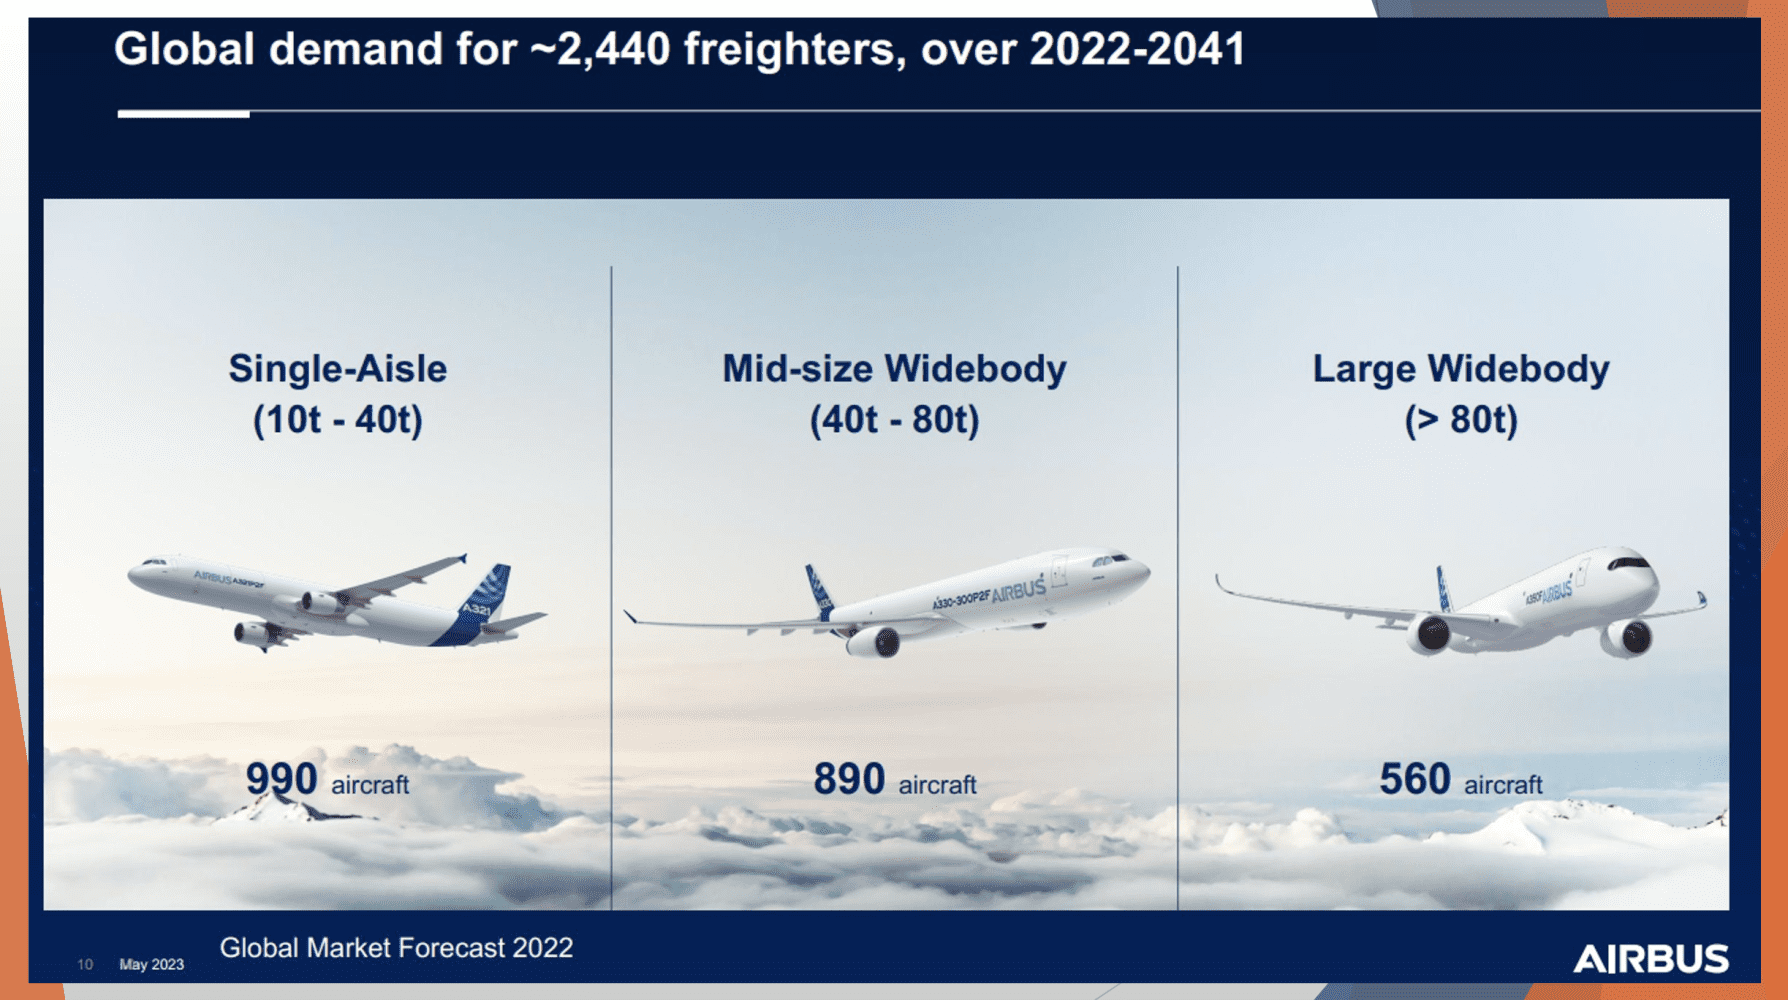 Airbus market forecast